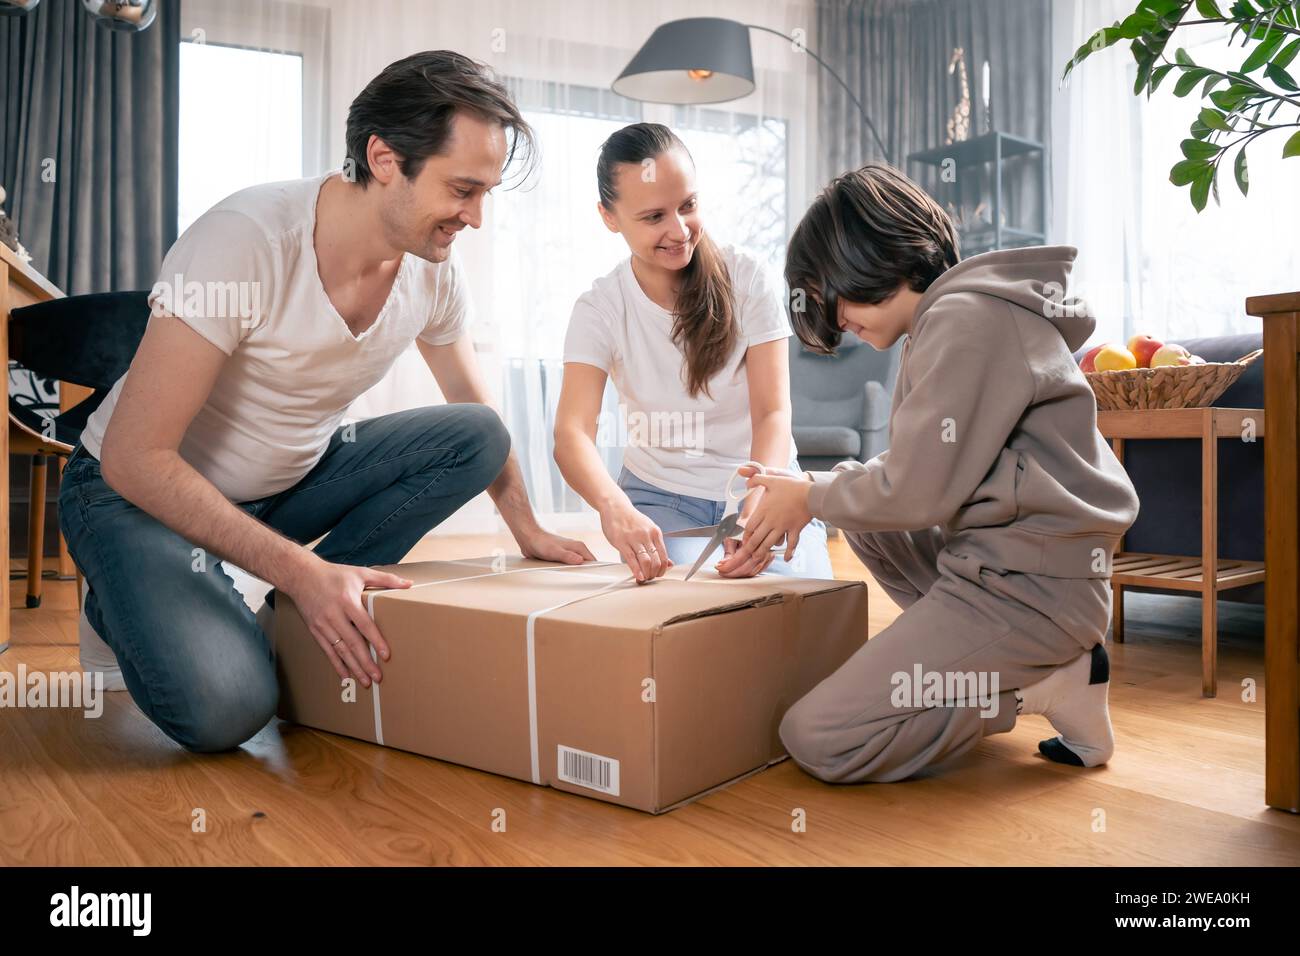 Sohn, Vater und Mutter packen gemeinsam einen großen Karton aus einem Paket mit Waren aus, die zu ihnen nach Hause geliefert wurden. Stockfoto